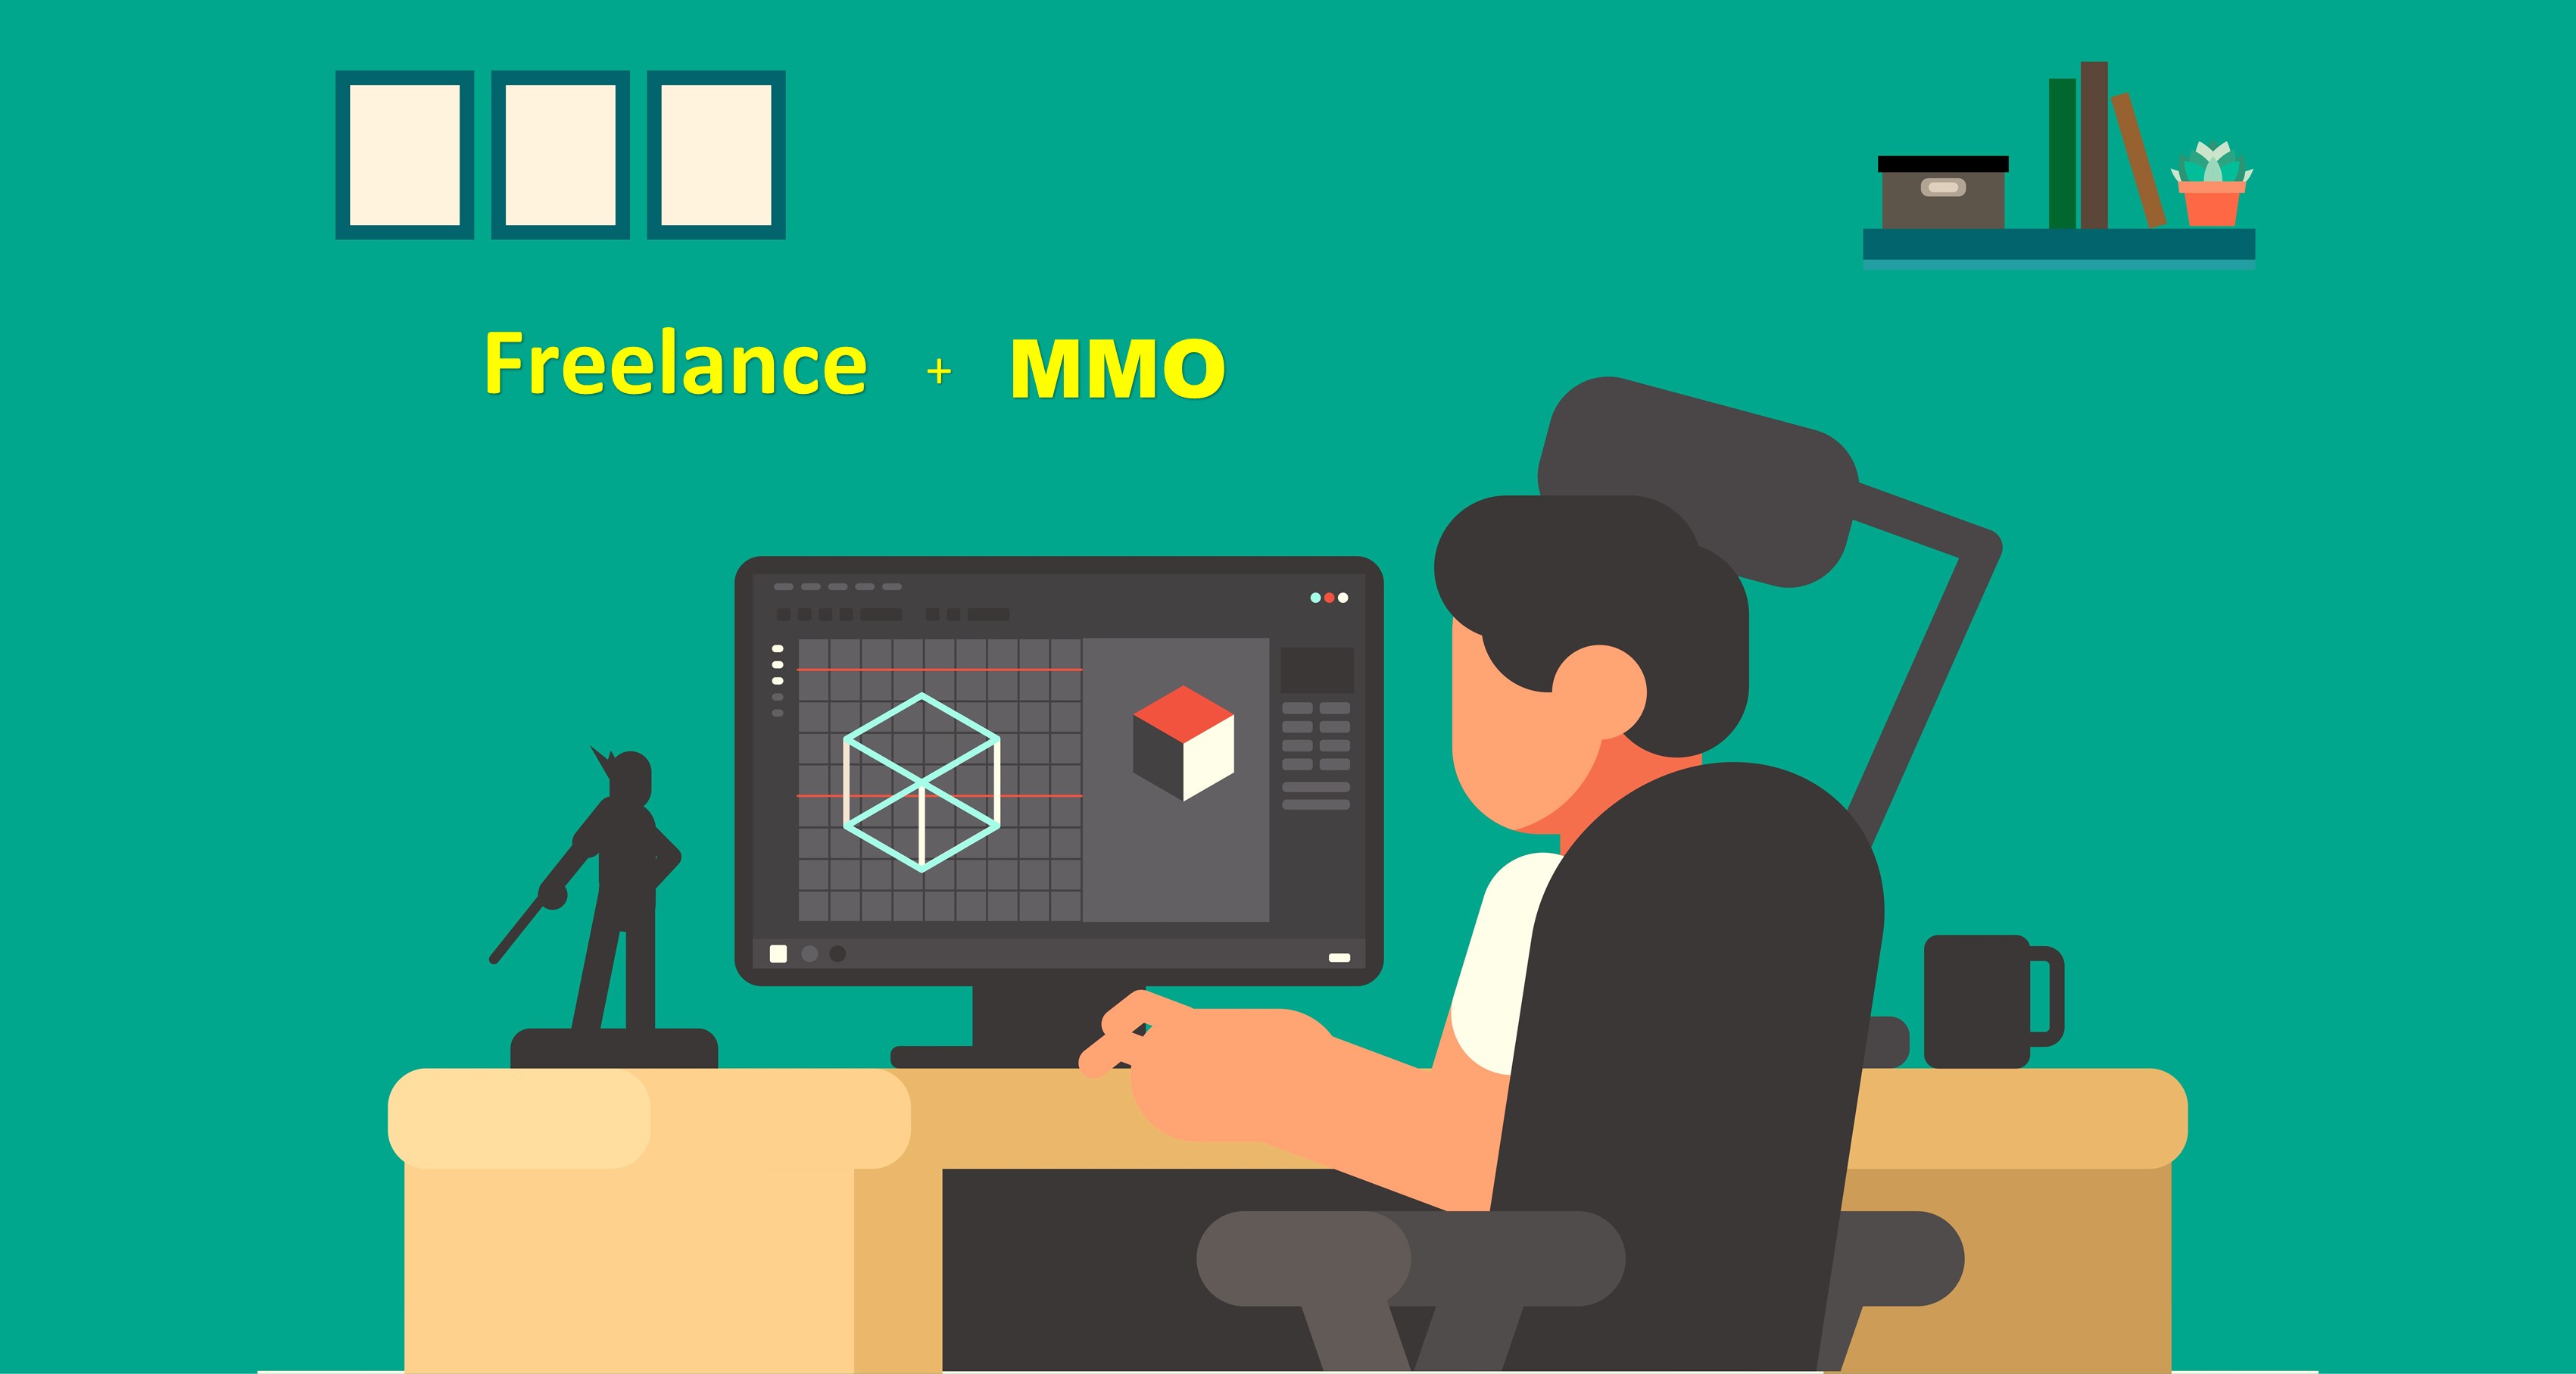 Kiếm tiền Online bằng cách kết hợp giữa Freelance và làm MMO